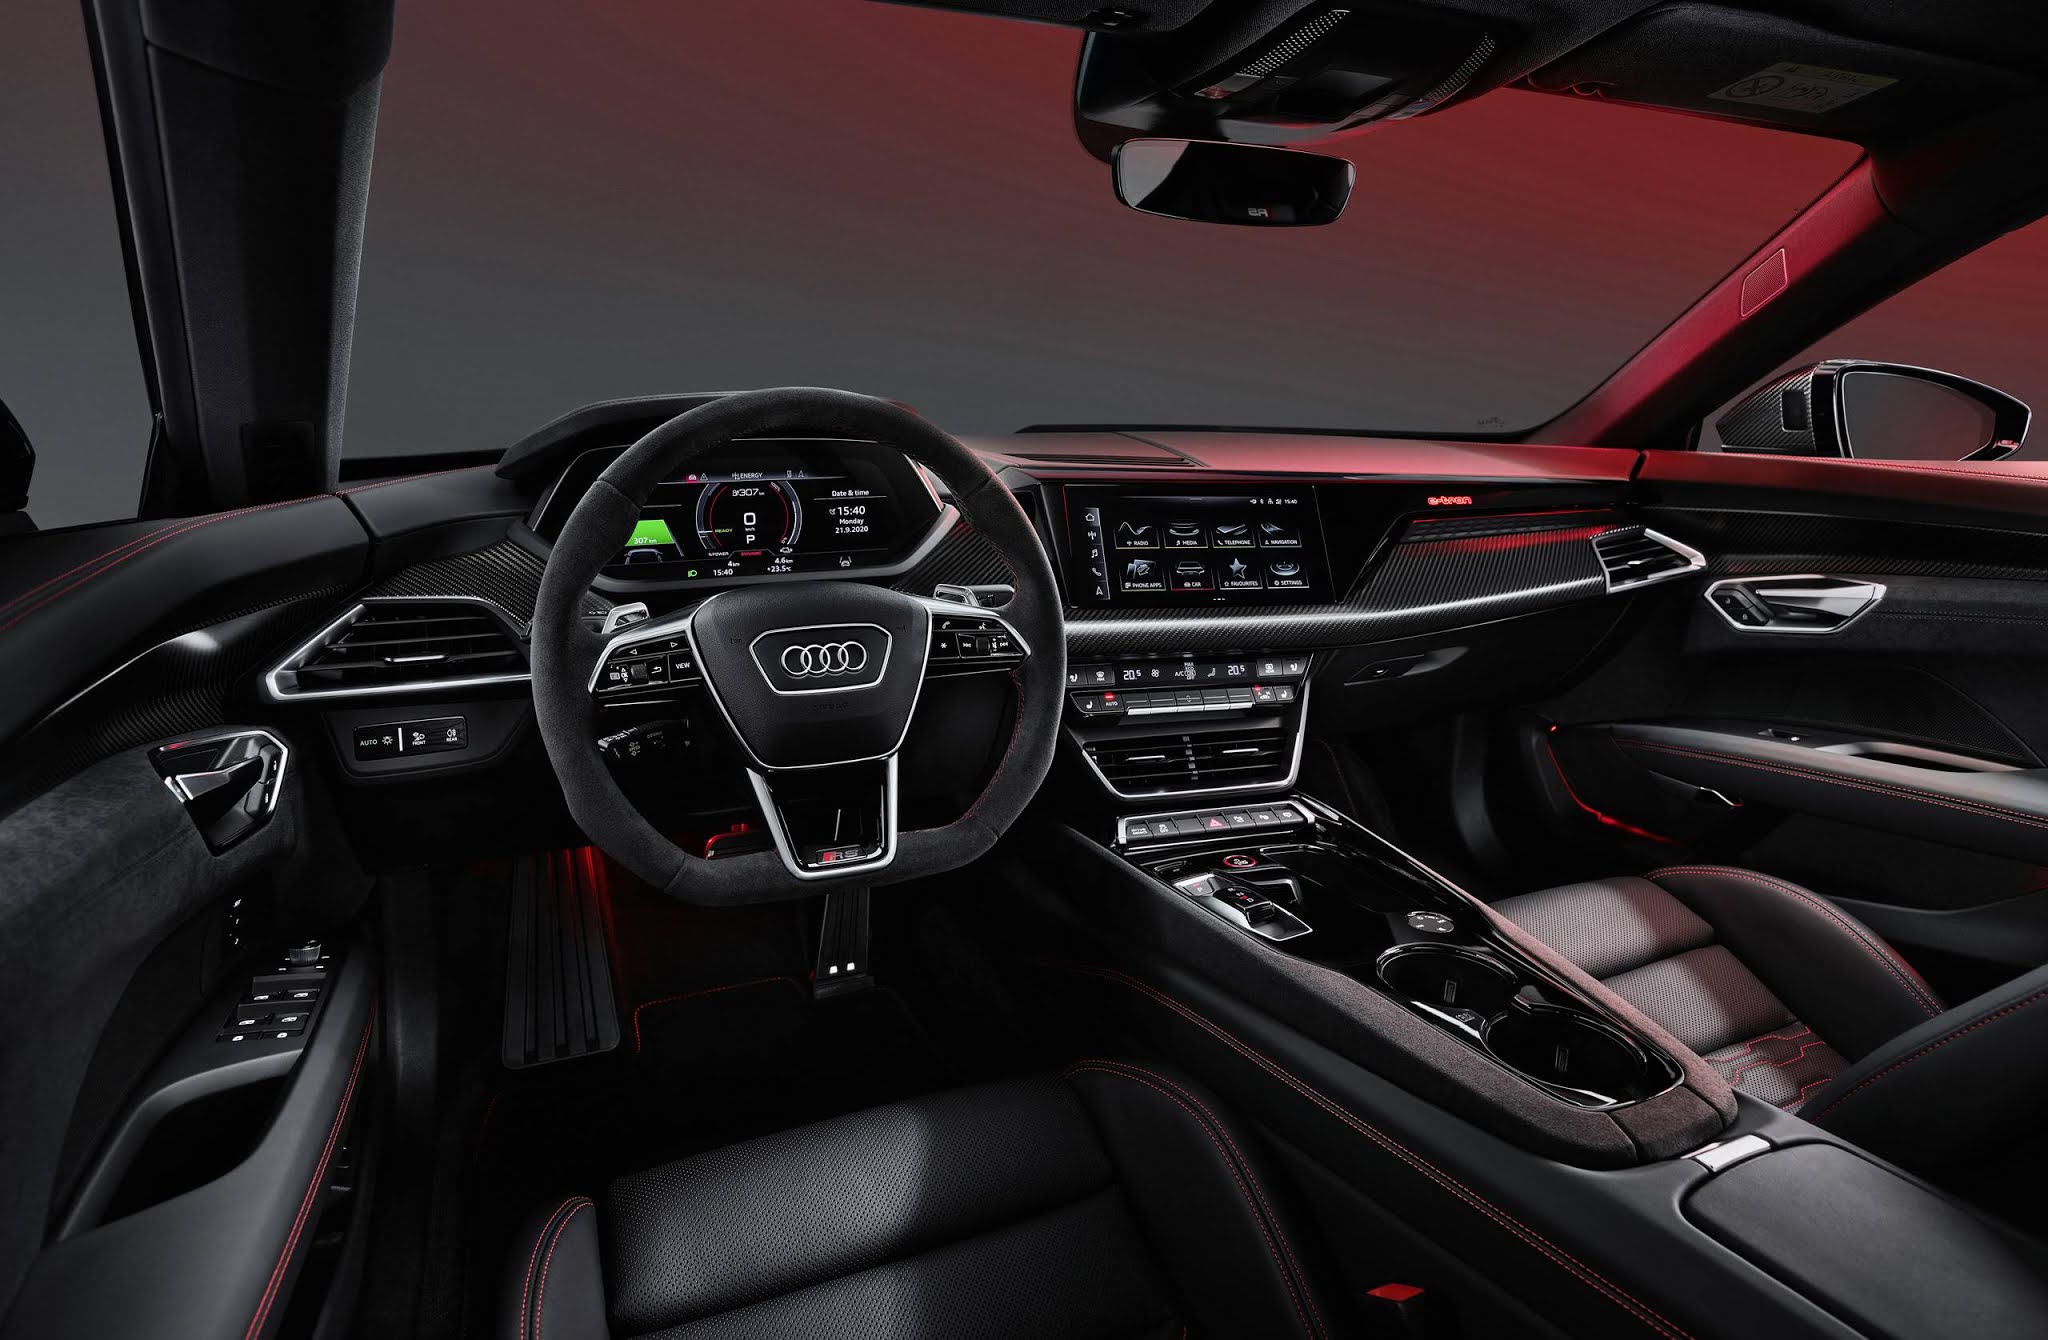 Confirmado no Brasil, Audi e-tron GT chega às concessionárias europeias